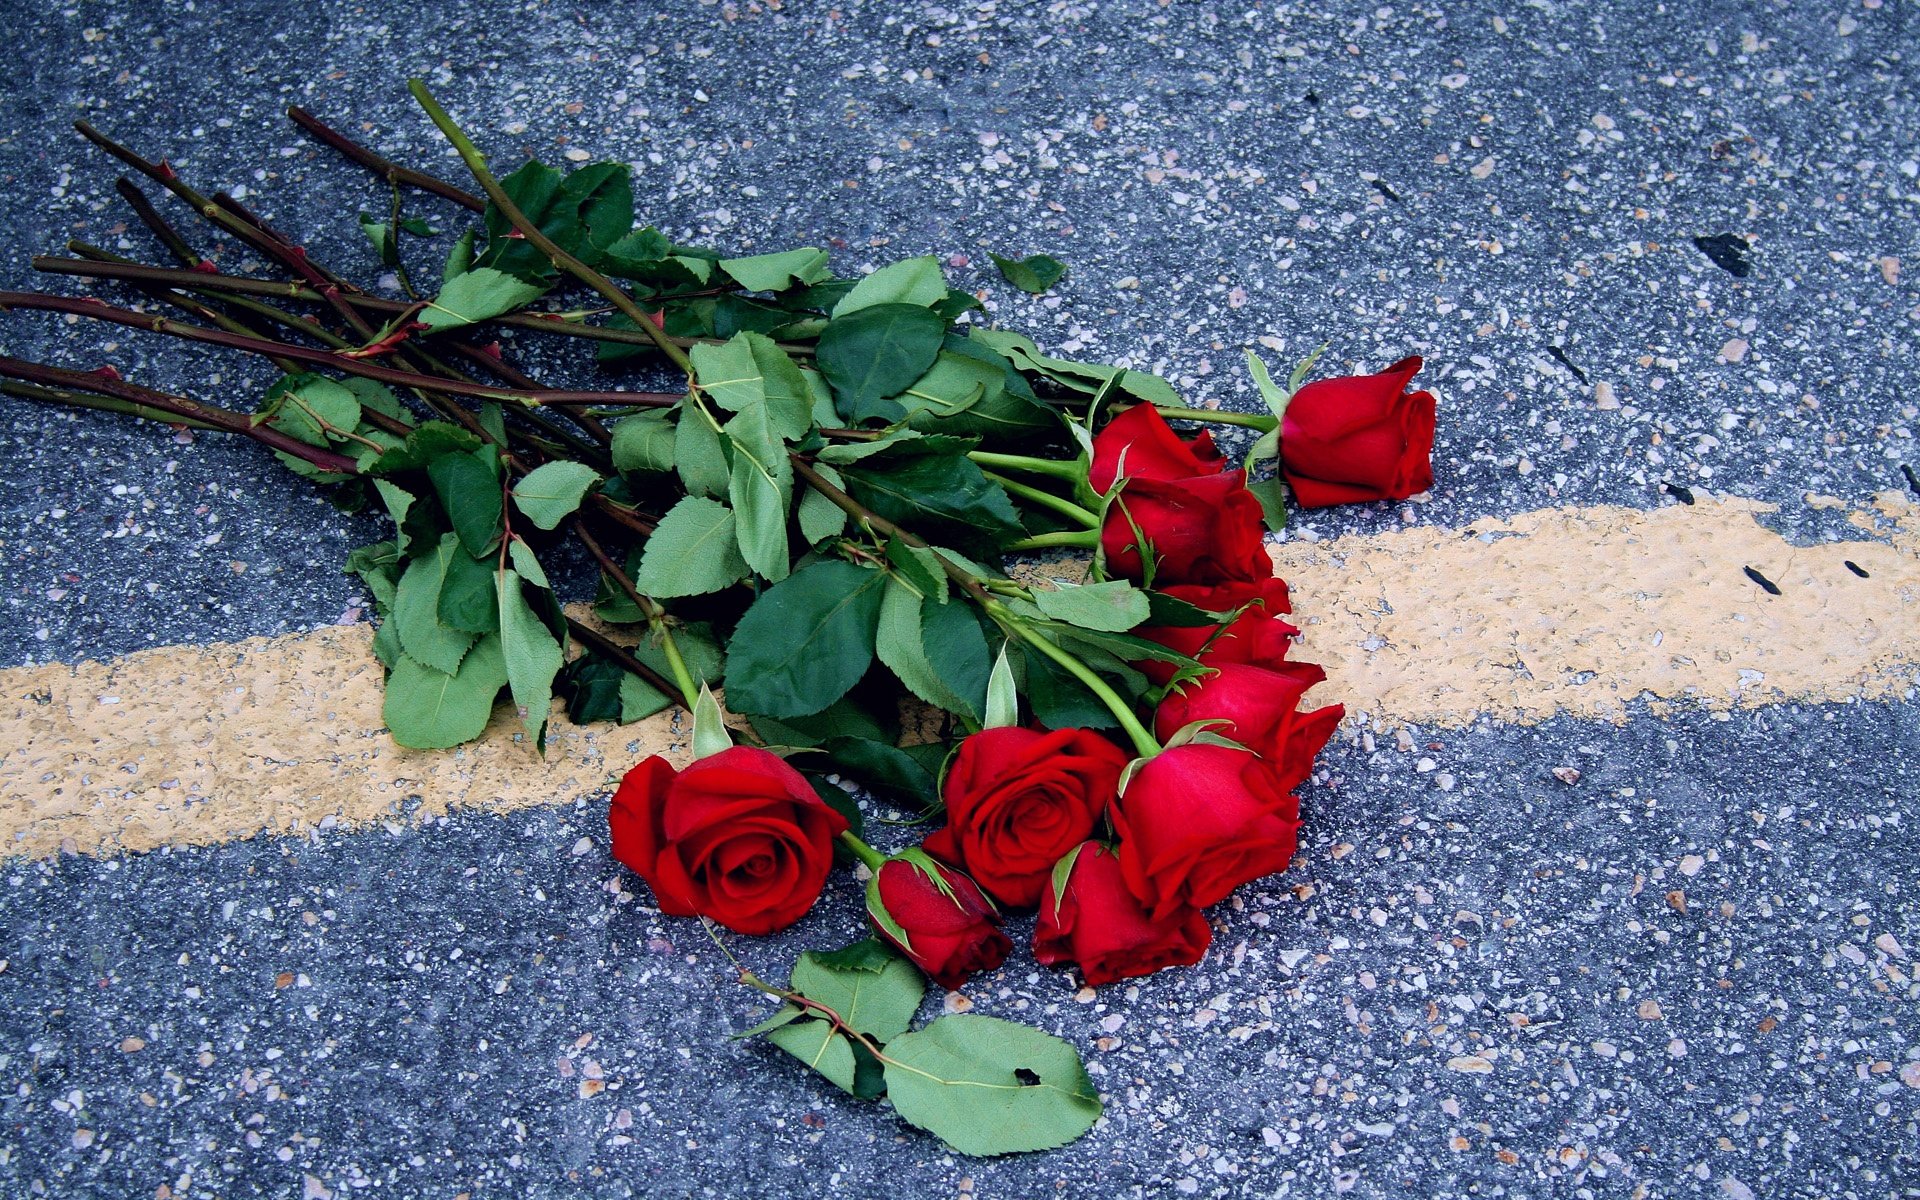 Разбивающая цветы. Выброшенные цветы. Выброшенный букет цветов. Выброшенные розы. Розы на полу.